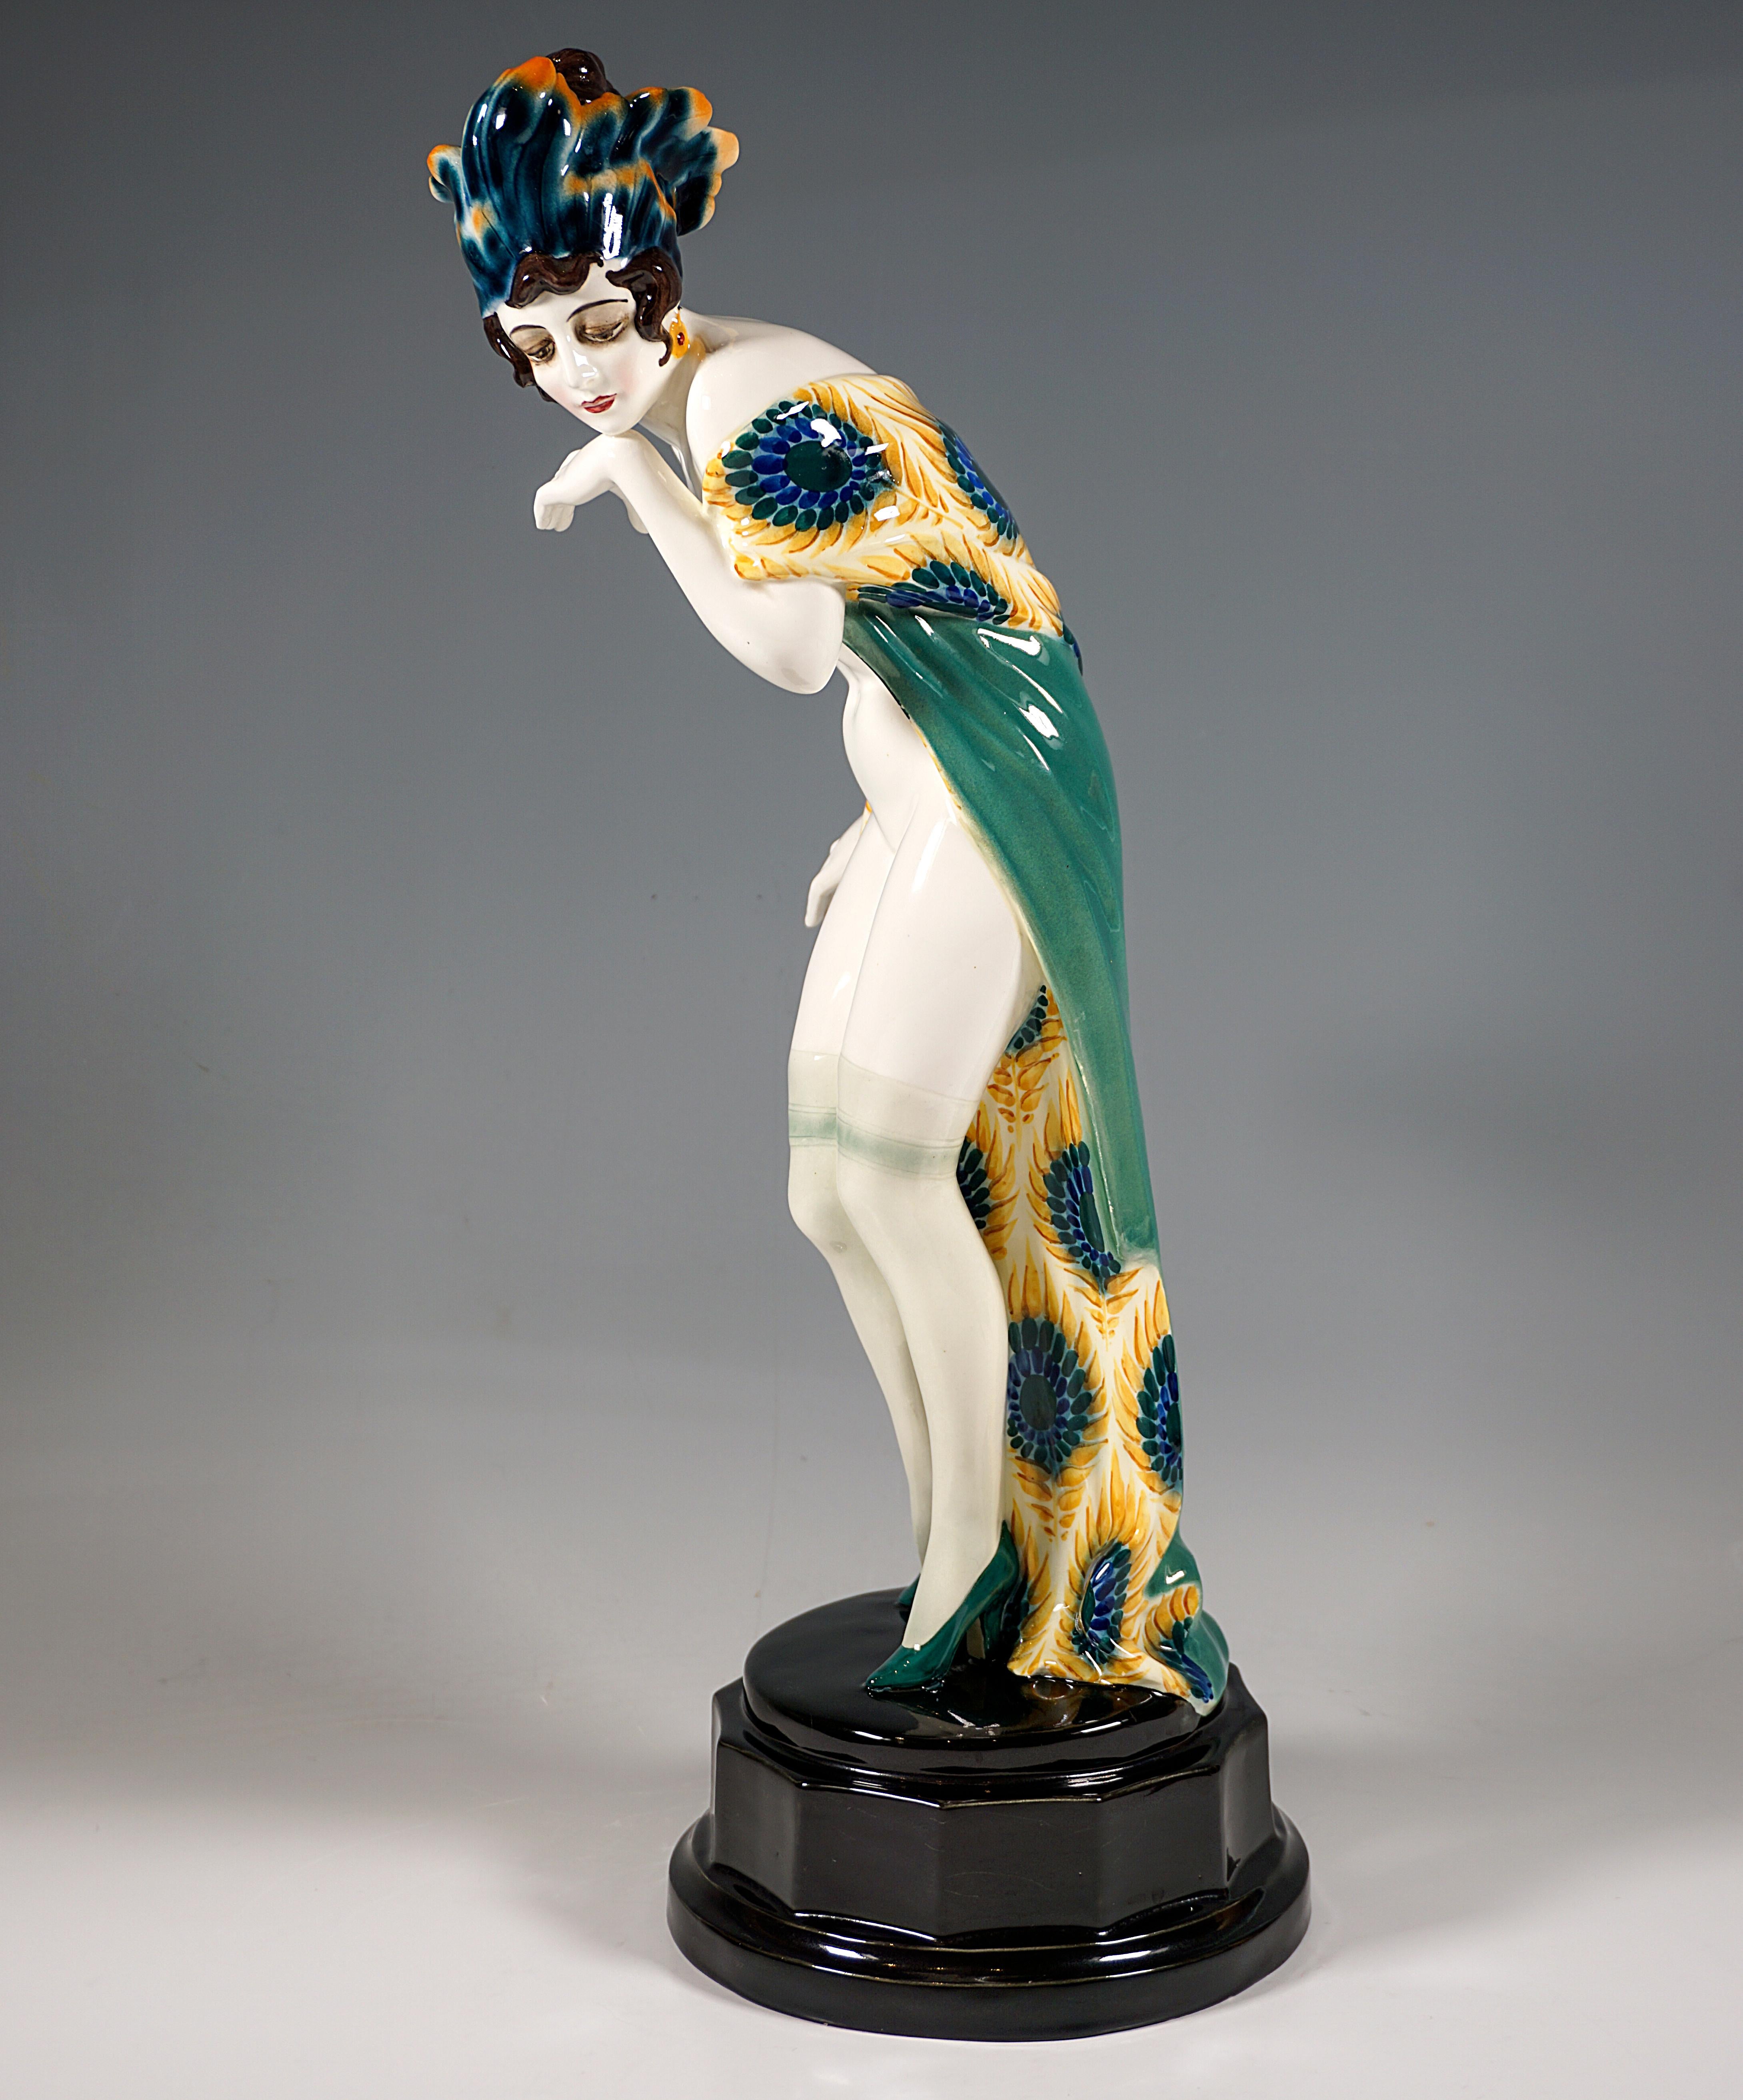 Hand-Crafted Goldscheider Art Déco Figure 'Fascination', Dancer with Headdress by W. Thomasch